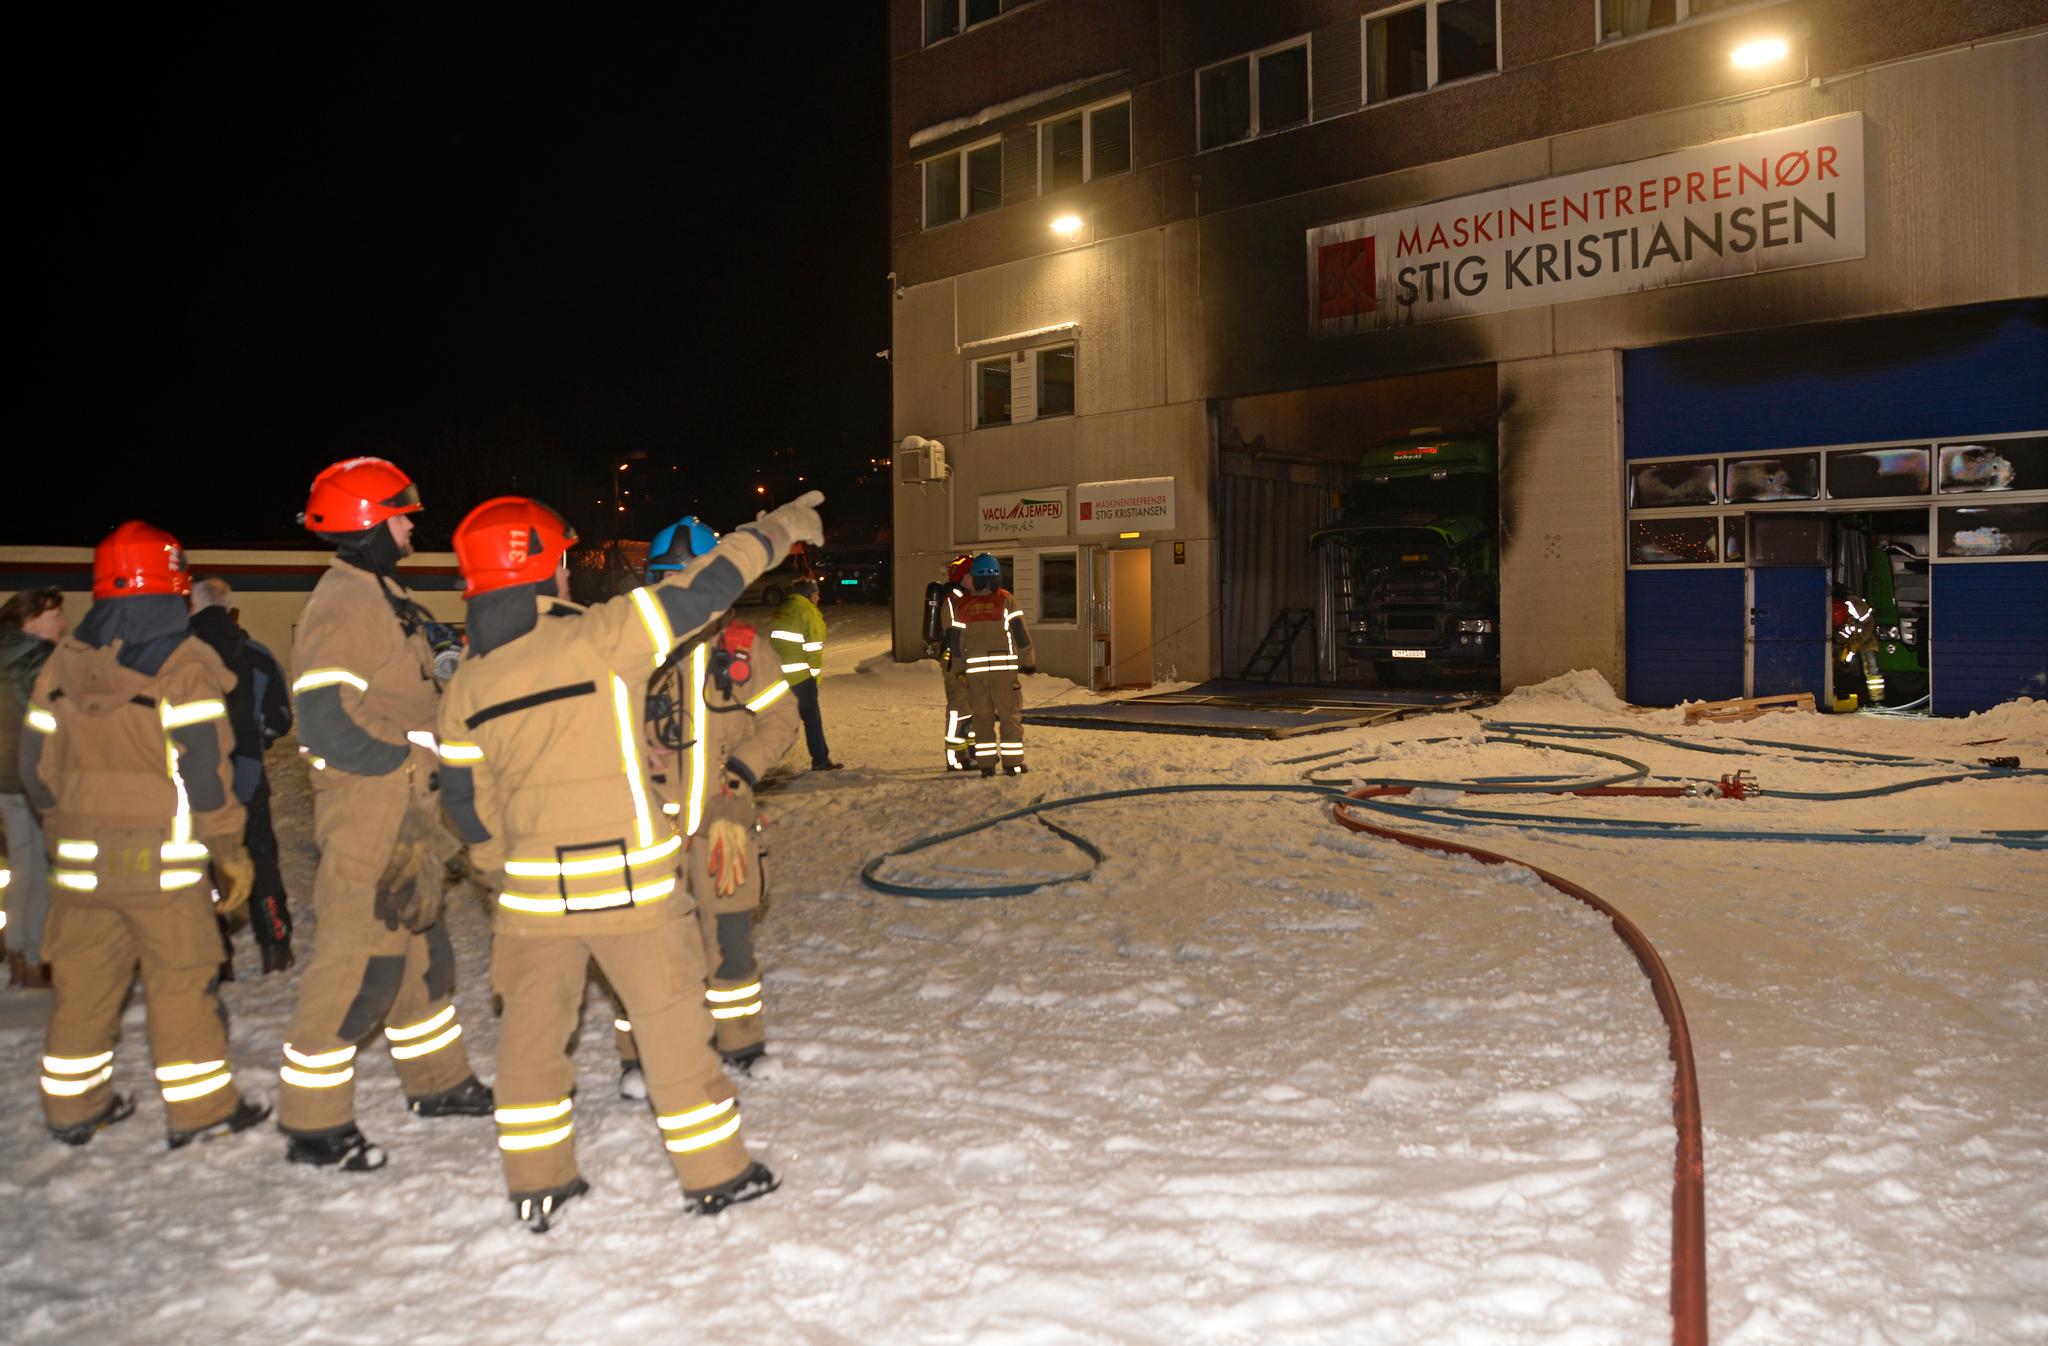 Eksplosjon i næringsbygg i Tromsø. Dørene og garasjeport hos Maskinentrepenør Stig Kristiansen er blåst ut.
Foto: Rune Stoltz Bertinussen / NTB scanpix